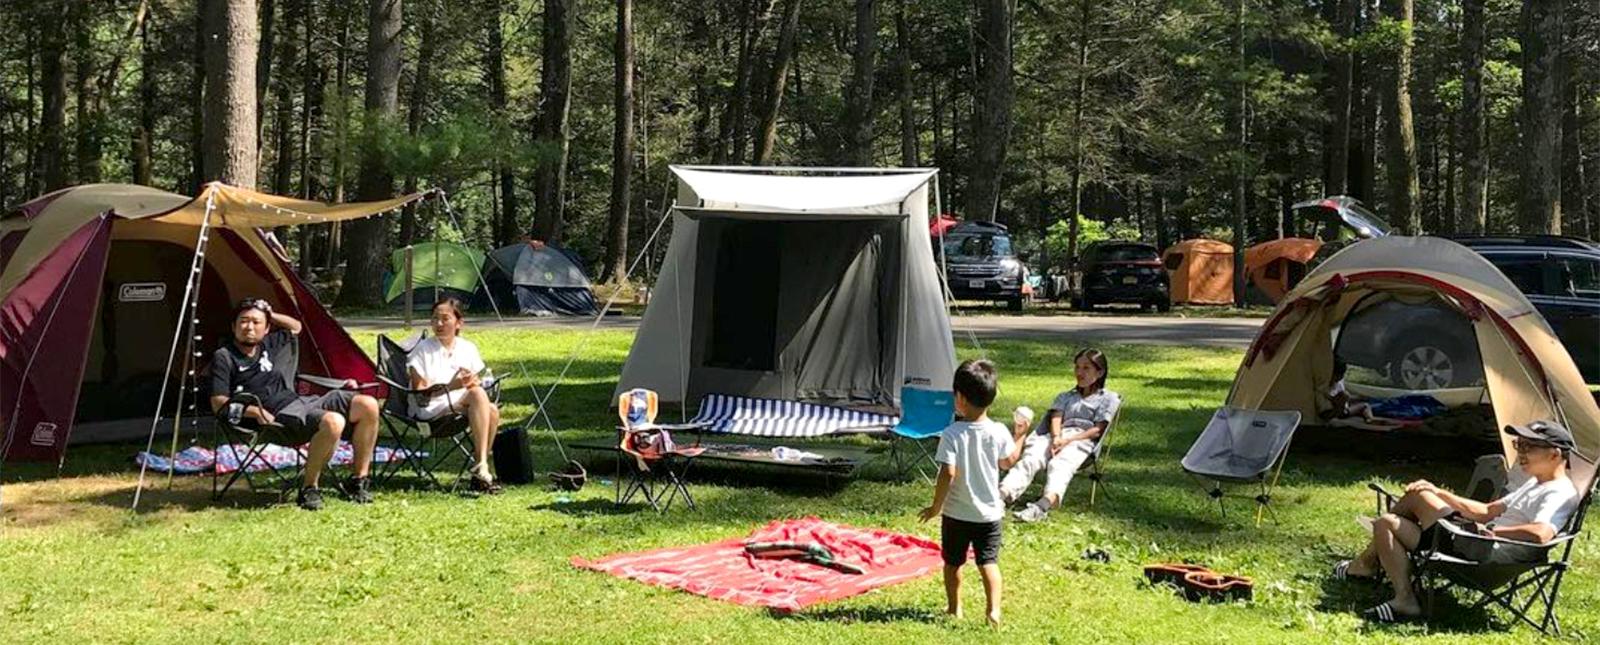 Una familia sentada en un campamento en verano (Instagram@inouehd)